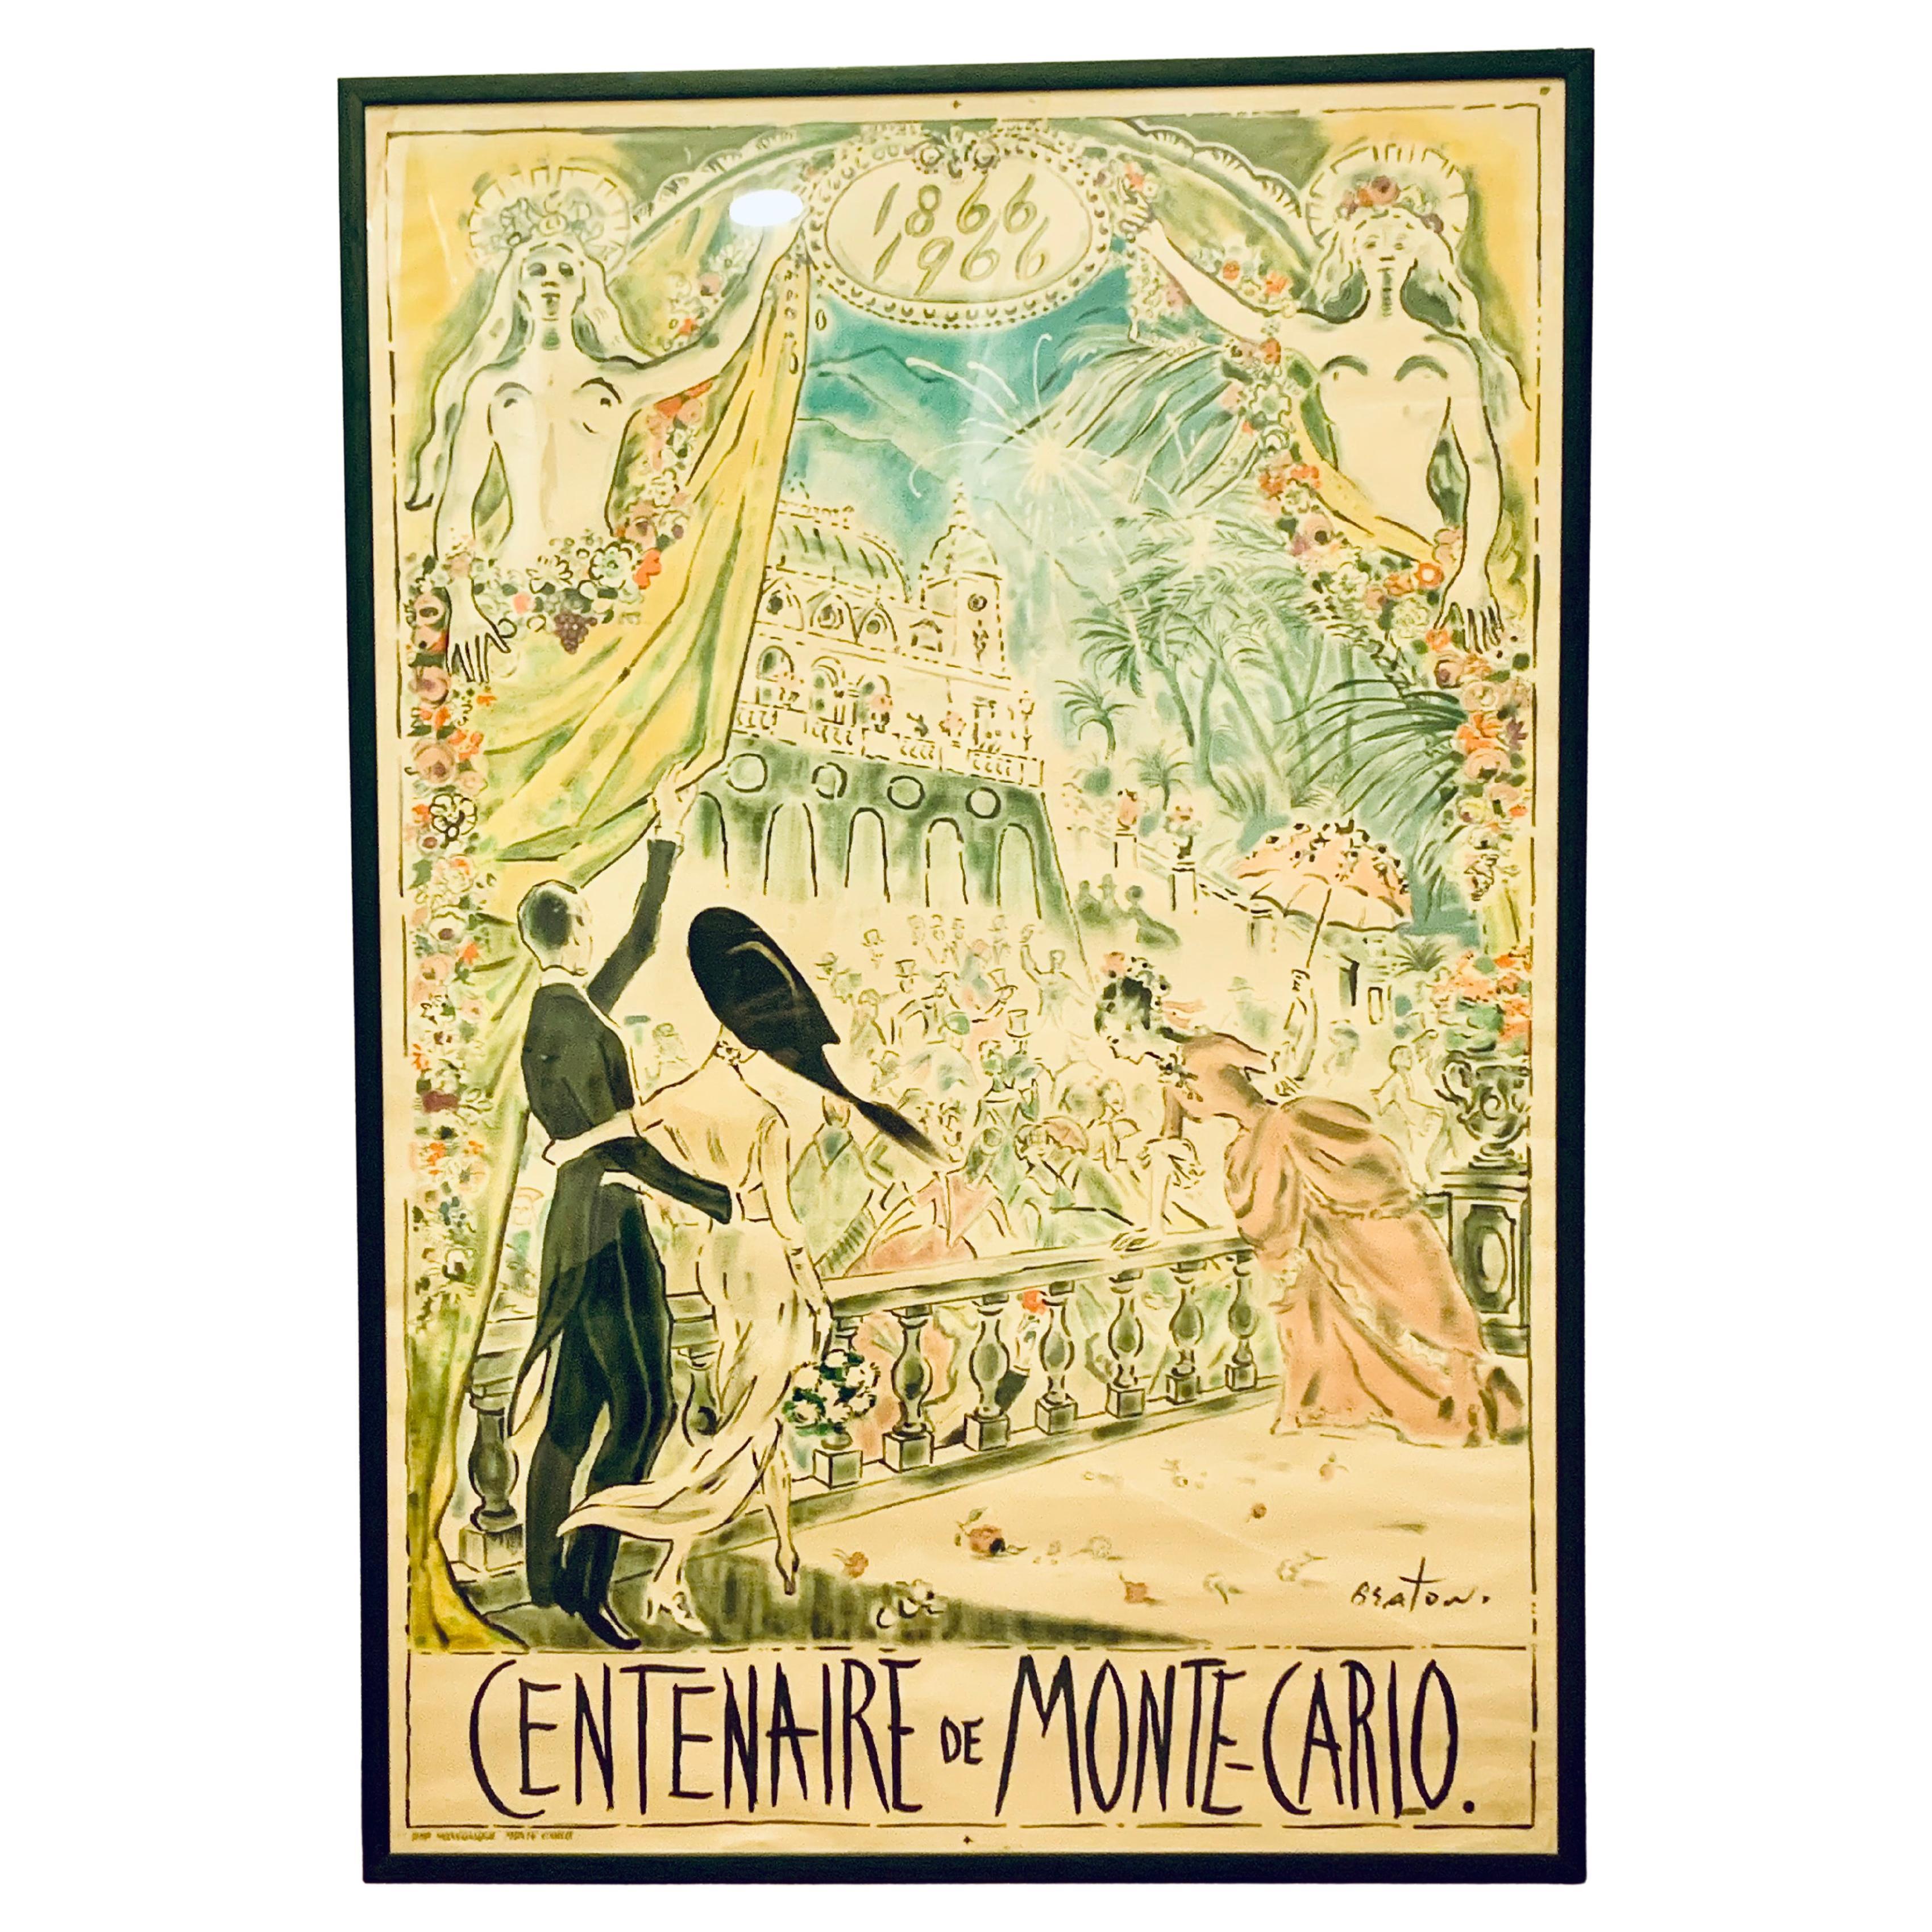  1966 Cecil Beaton CENTENAIRE de MONTE, CARLO Lithographic Poster in Colours For Sale